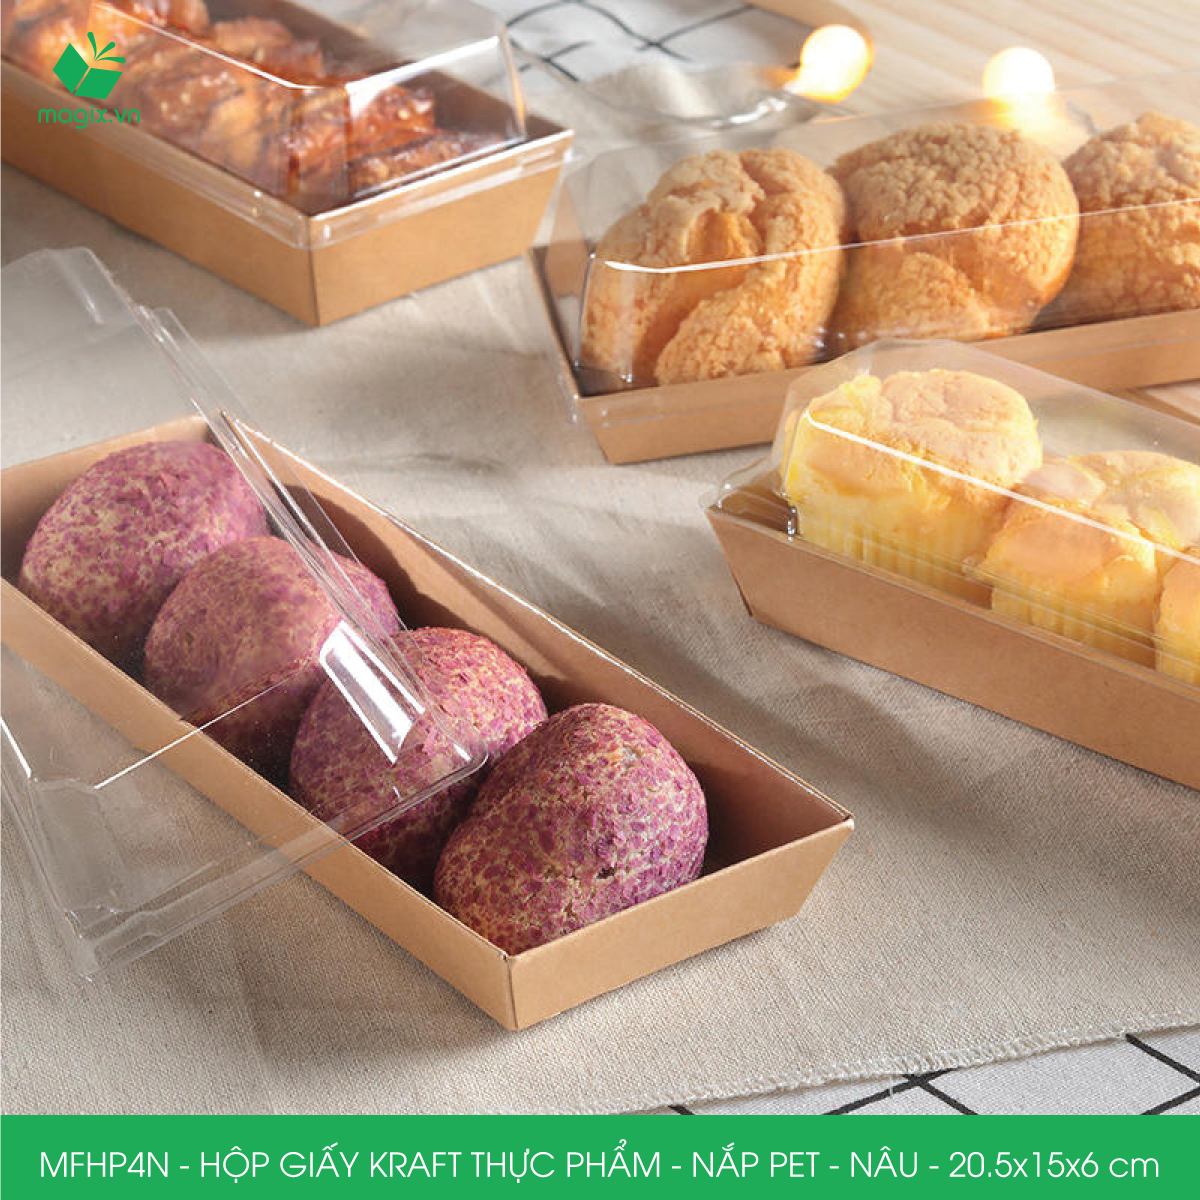 MFHP4N - 20.5x15x6 cm - 25 hộp giấy kraft thực phẩm màu nâu nắp Pet, hộp giấy chữ nhật đựng thức ăn, hộp bánh nắp trong